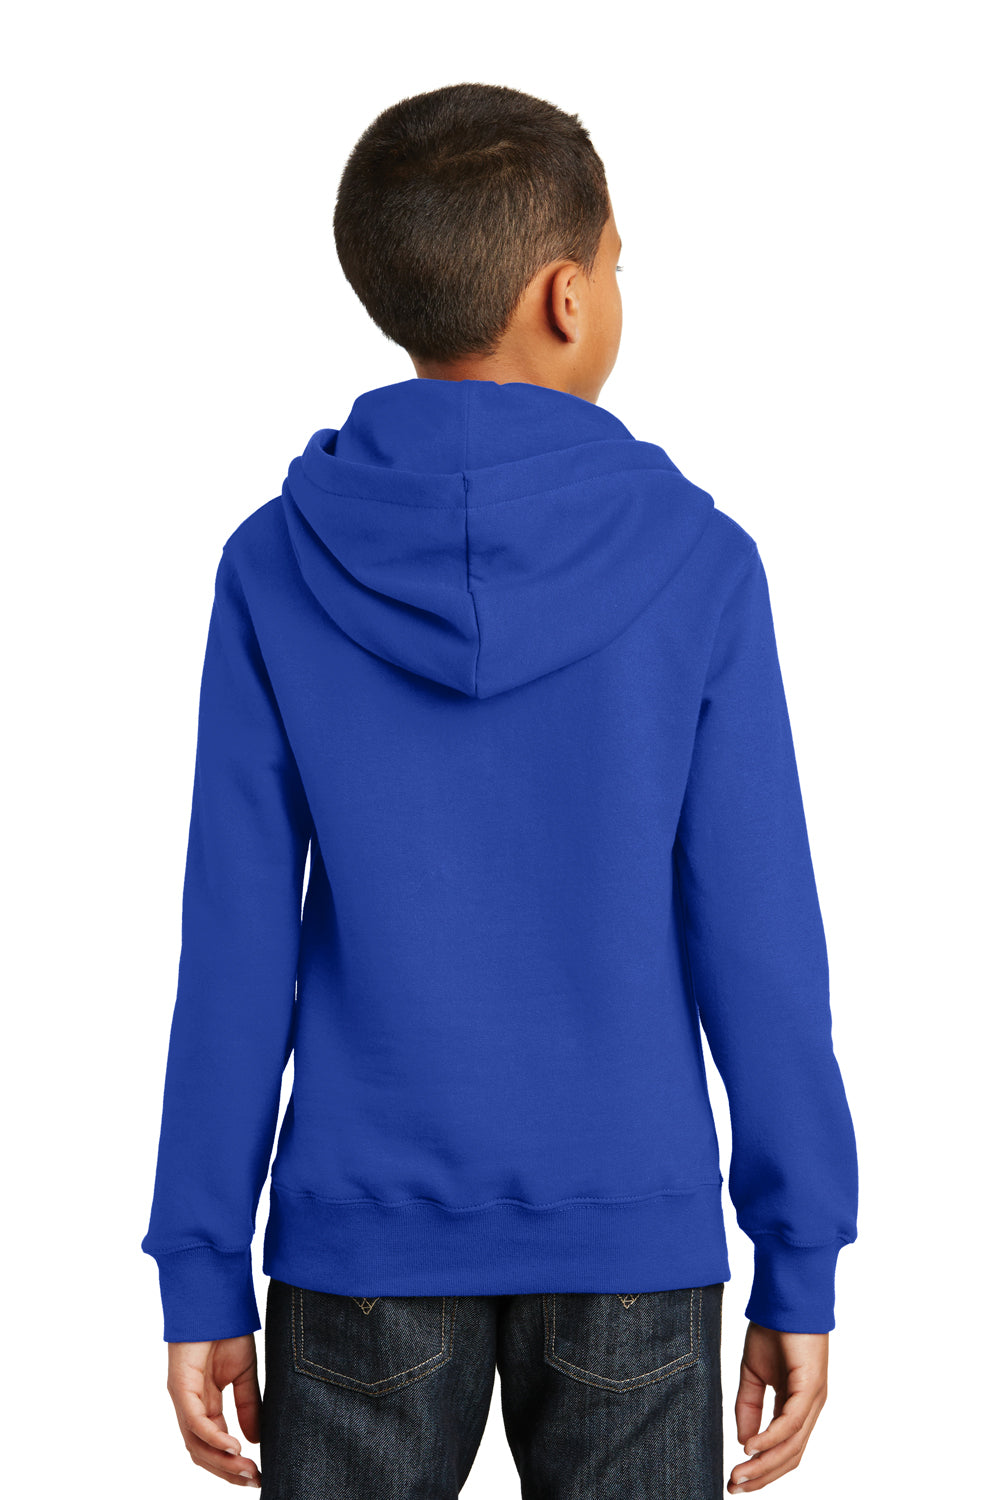 Port & Company PC850YH Youth Fan Favorite Fleece Hooded Sweatshirt Hoodie Royal Blue Back